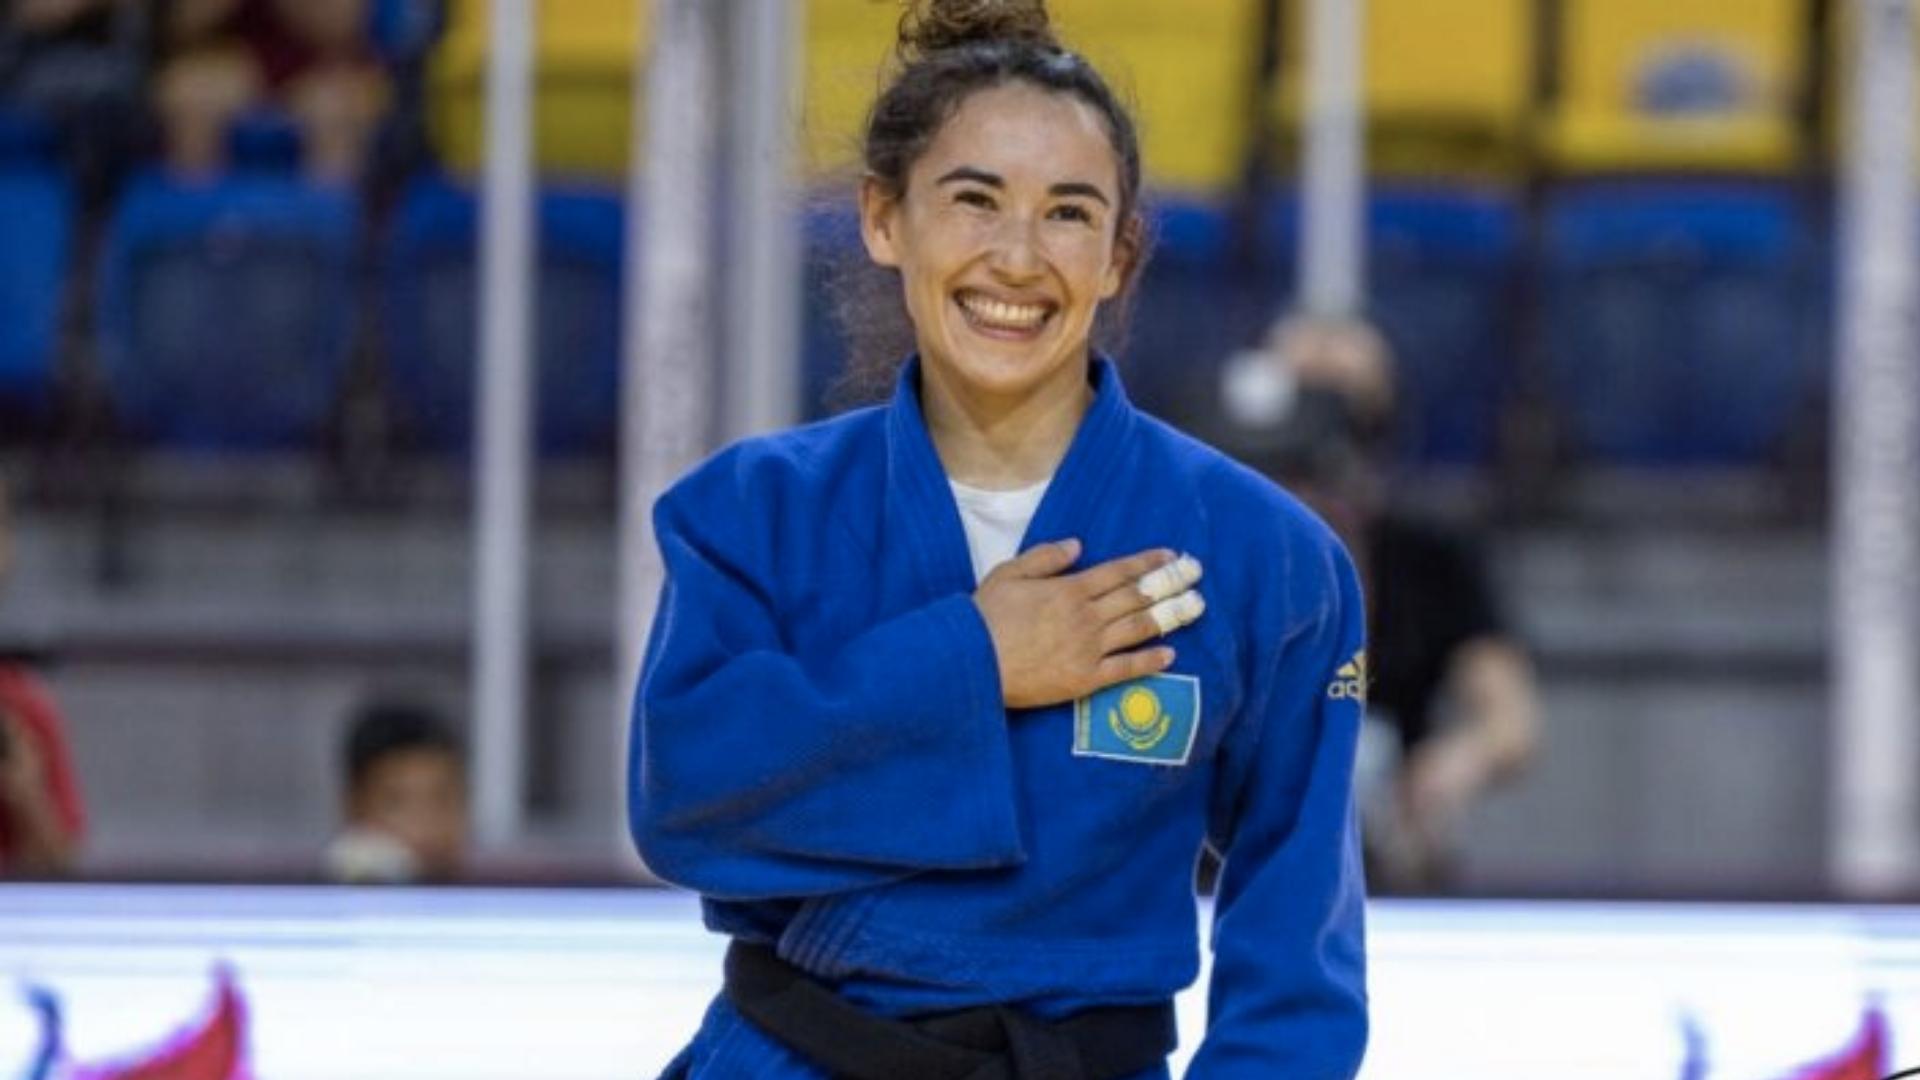 Әбиба Әбужақынова Ташкентте өтіп жатқан әлем чемпионатын жеңіспен бастады